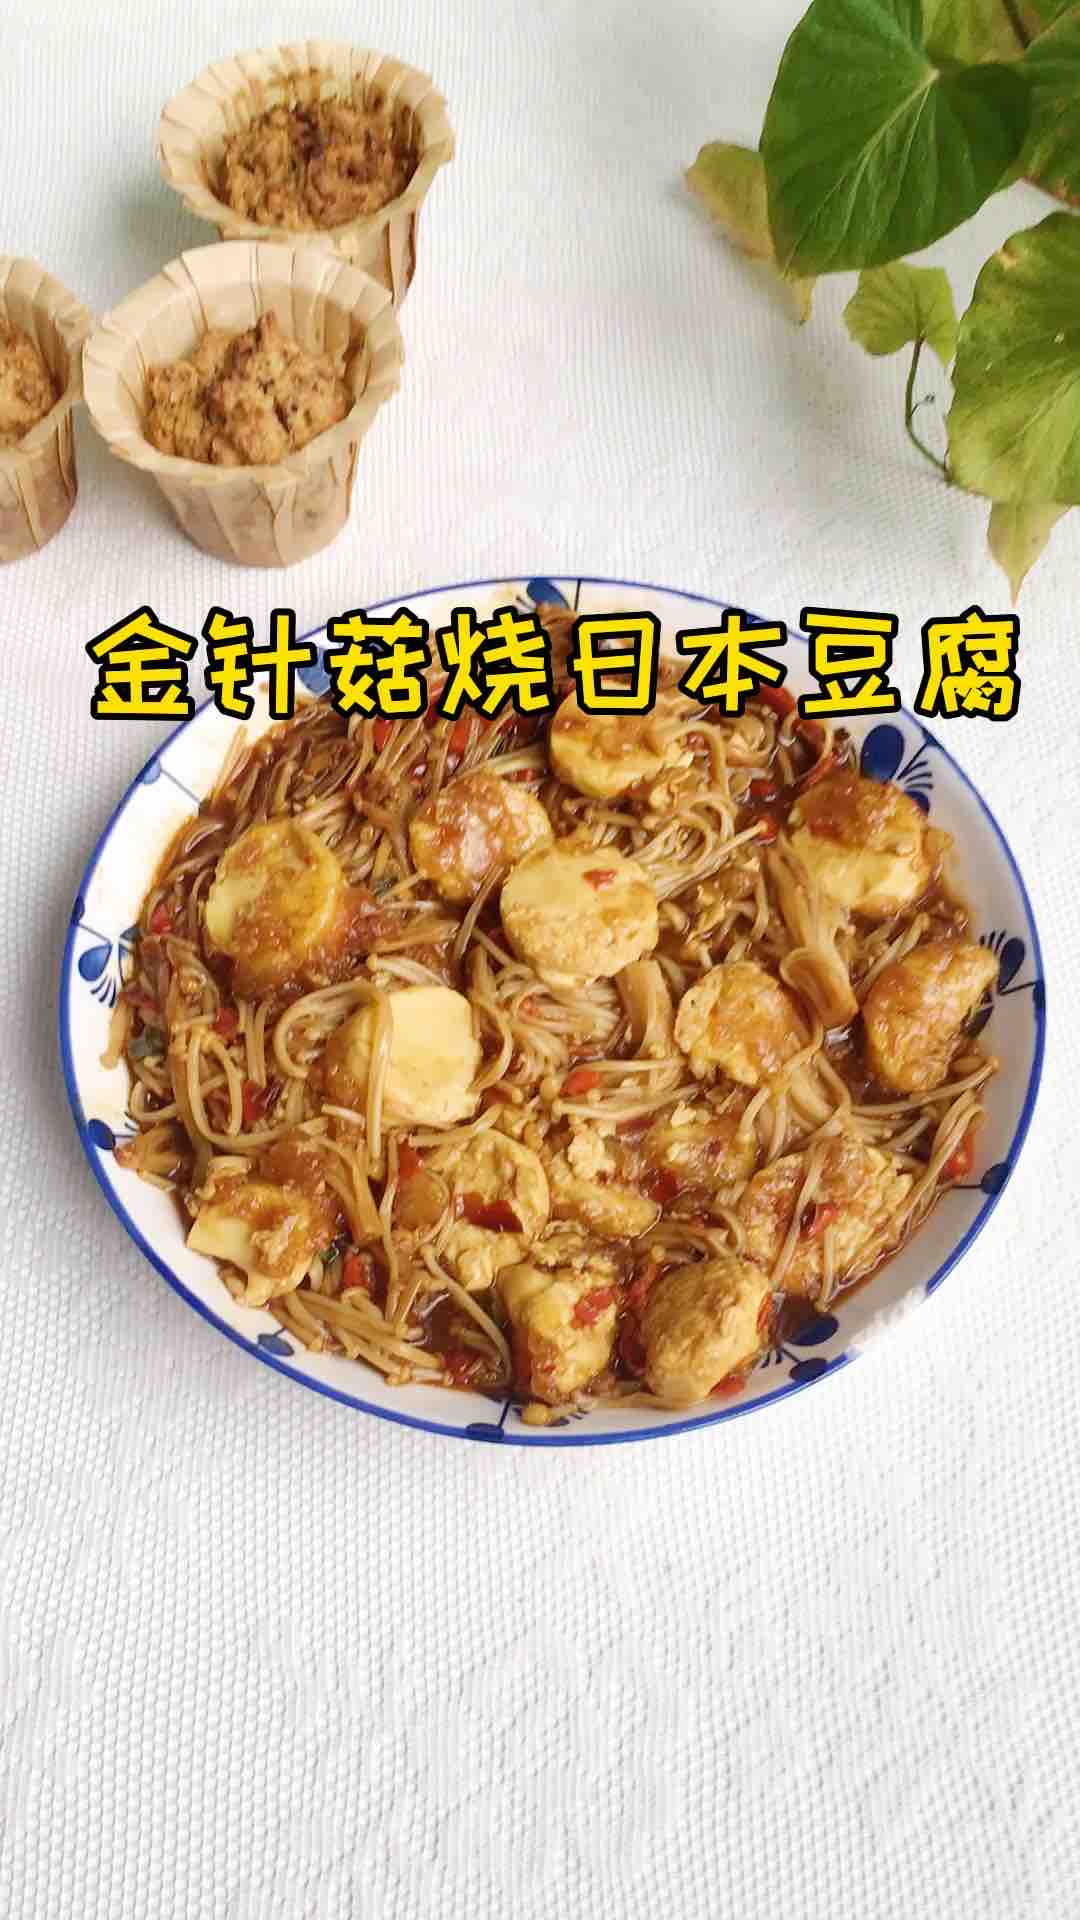 Enoki Mushroom Grilled Japanese Tofu recipe